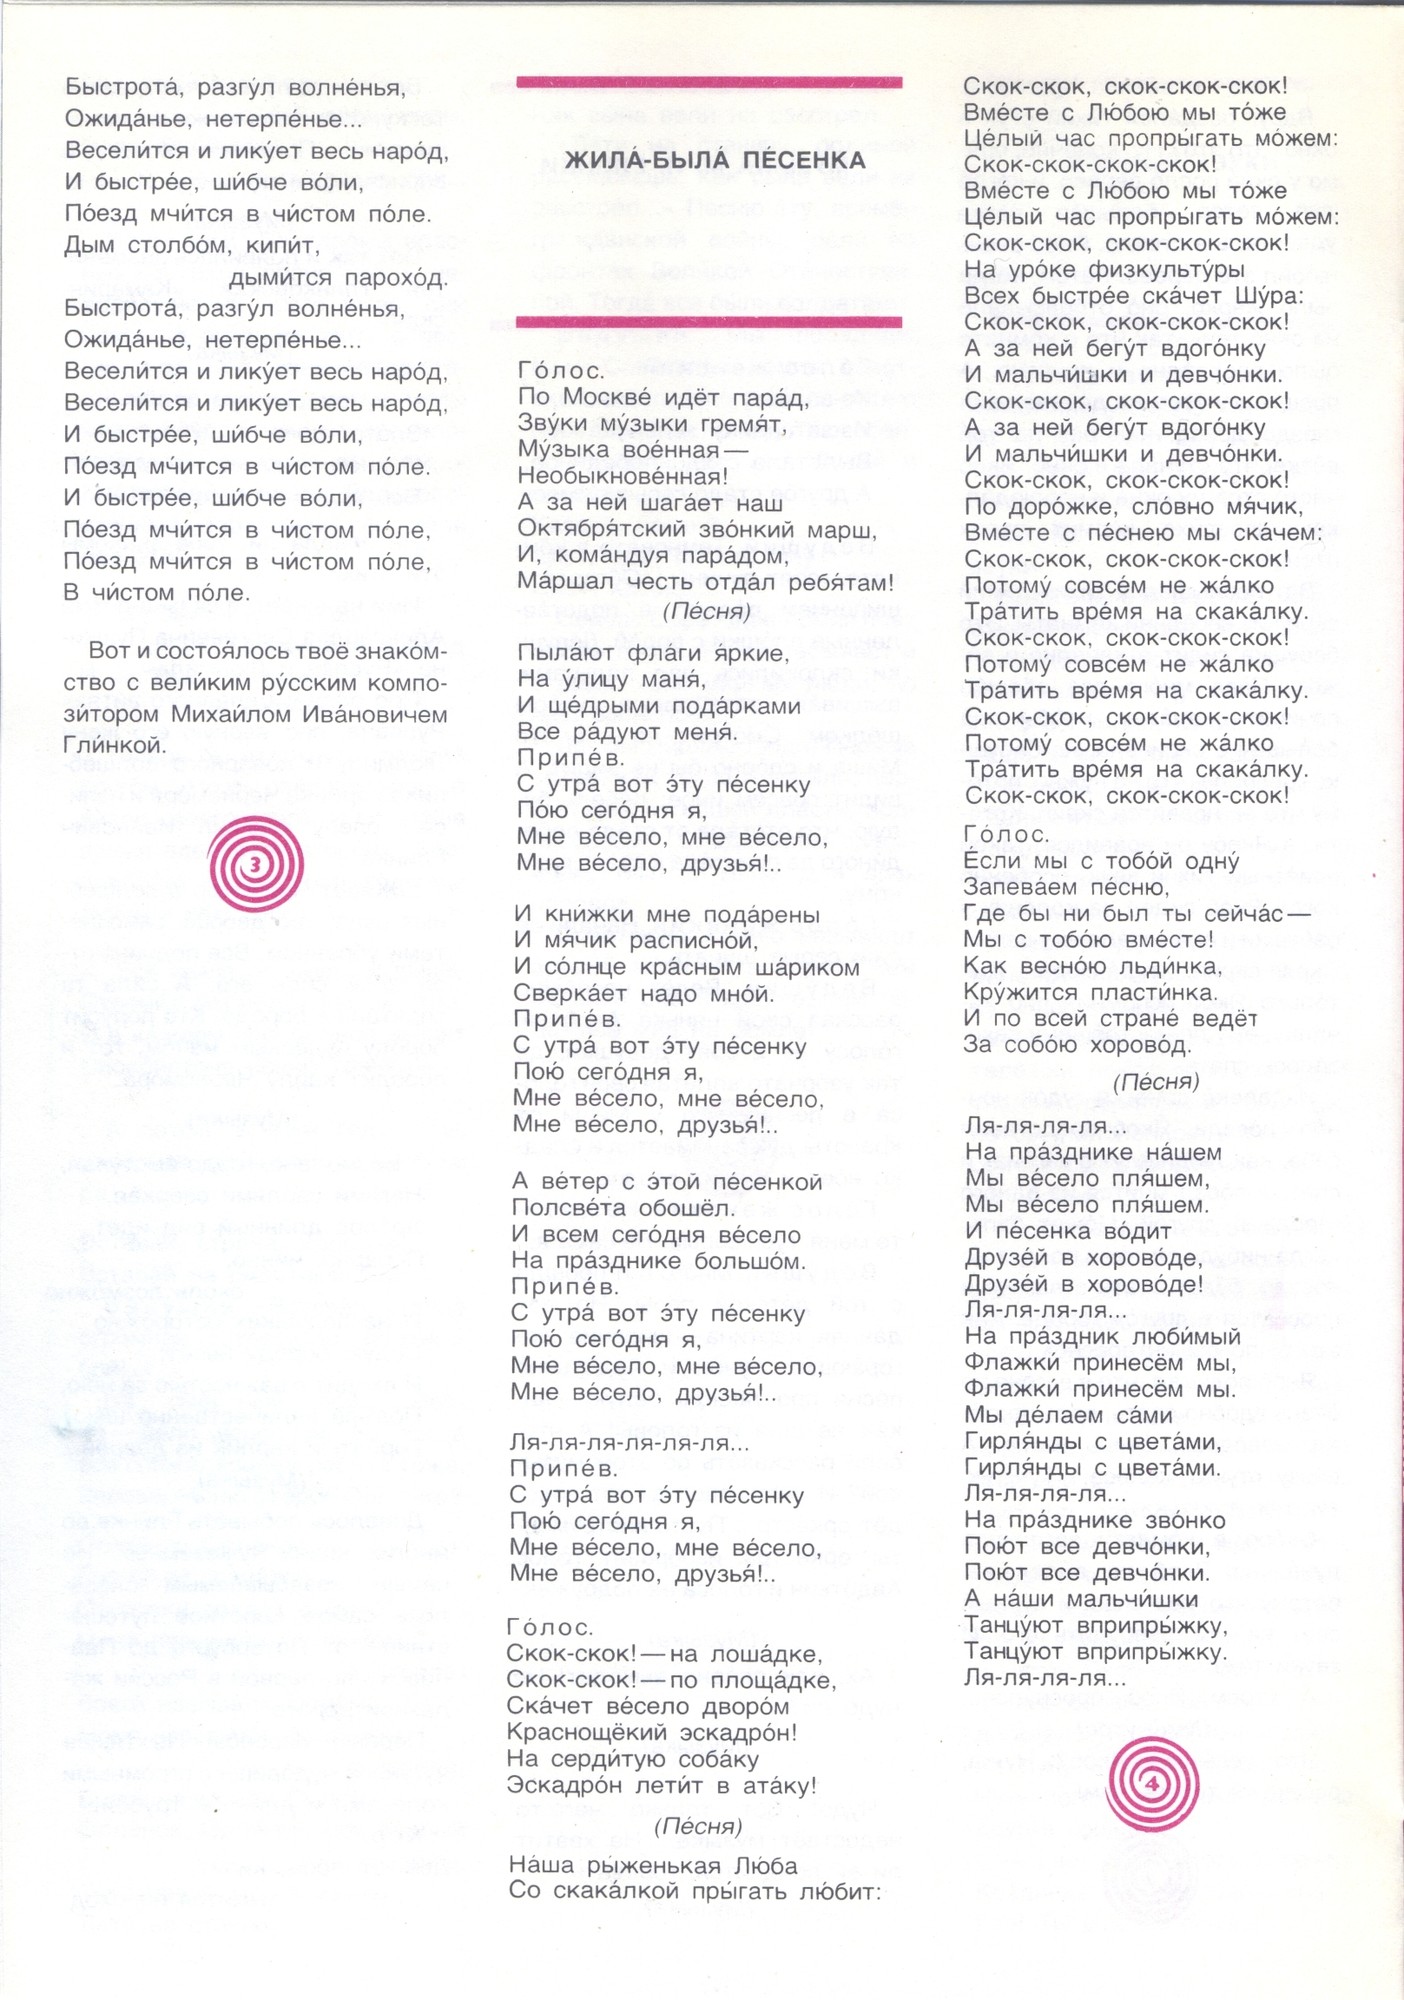 Колобок 1977 № 2